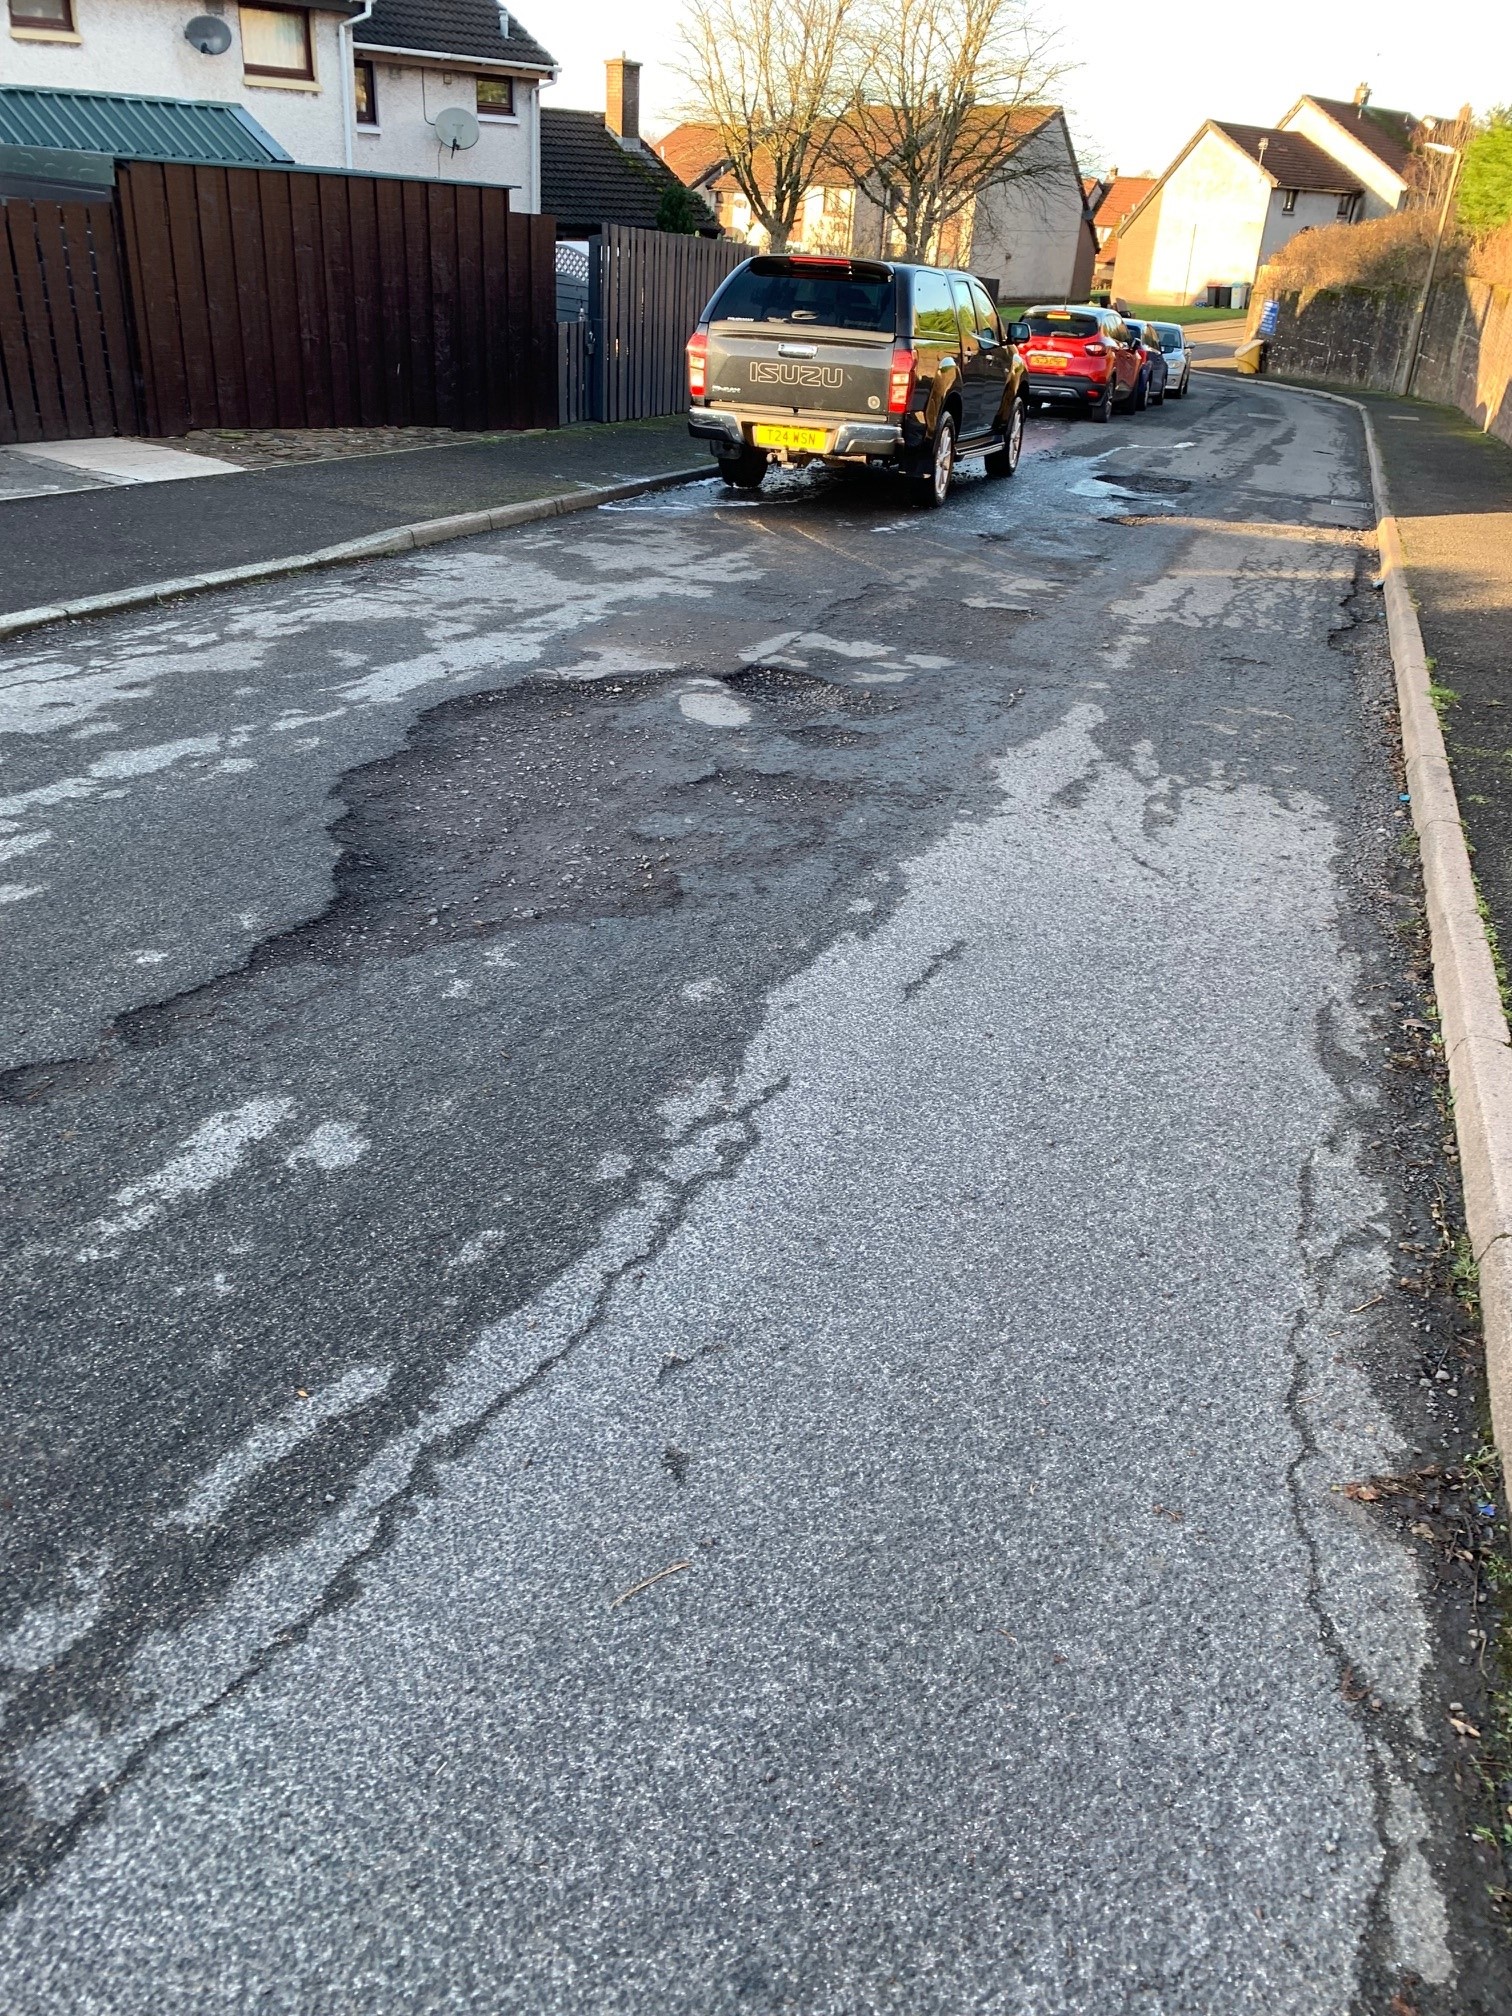 Concerns raised over town’s pothole plague